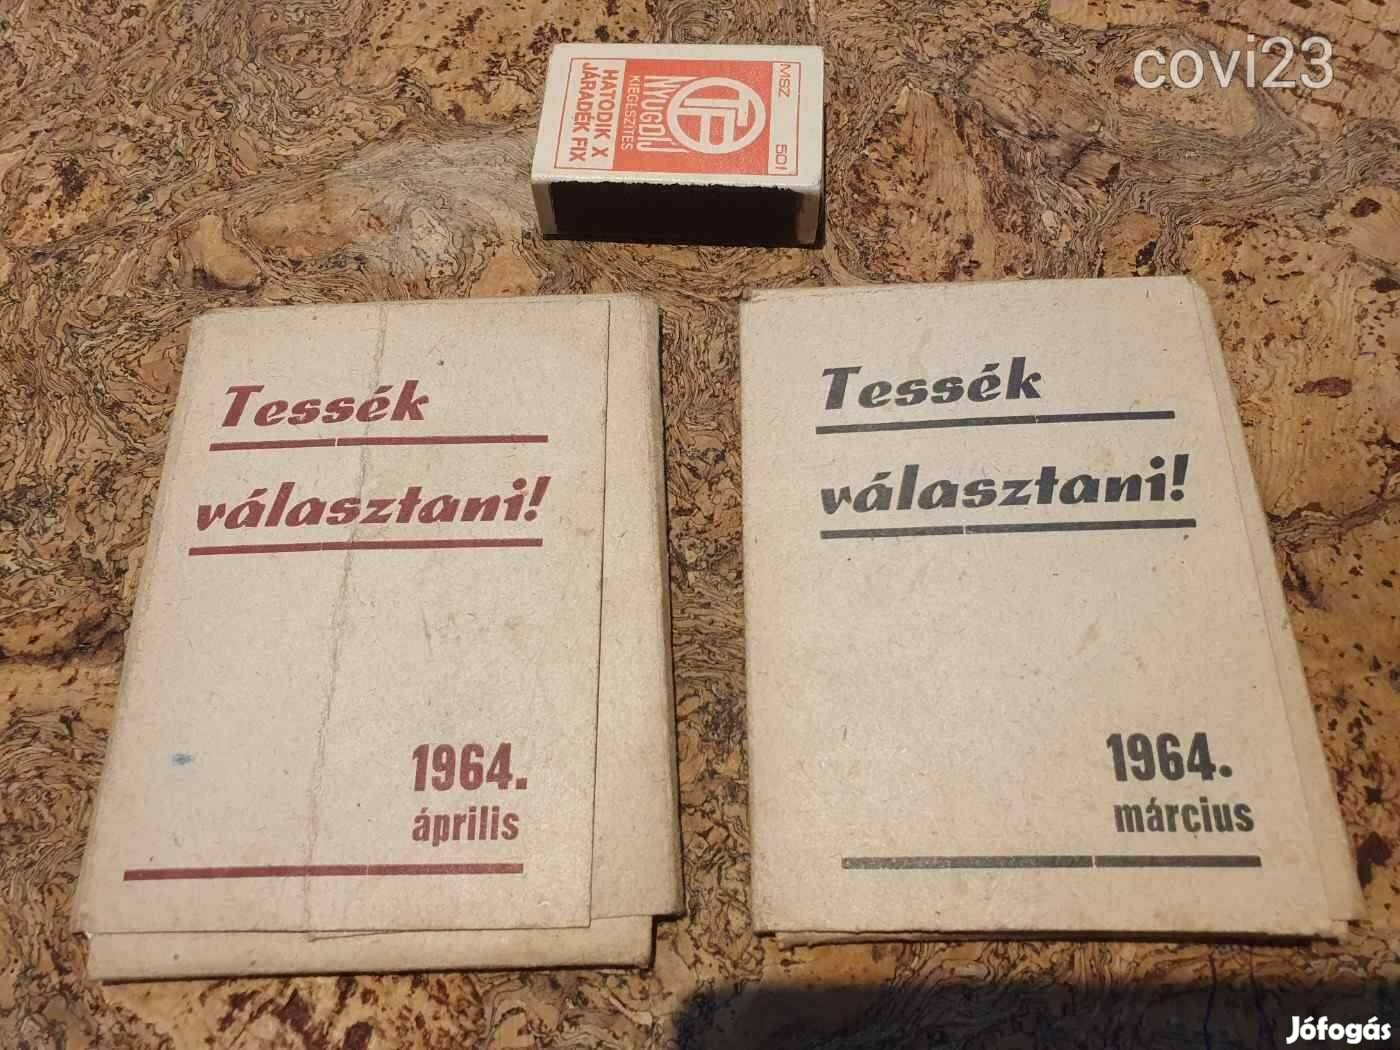 Retro mozis kártyák 1964-ből mokép szocreál kádár propaganda